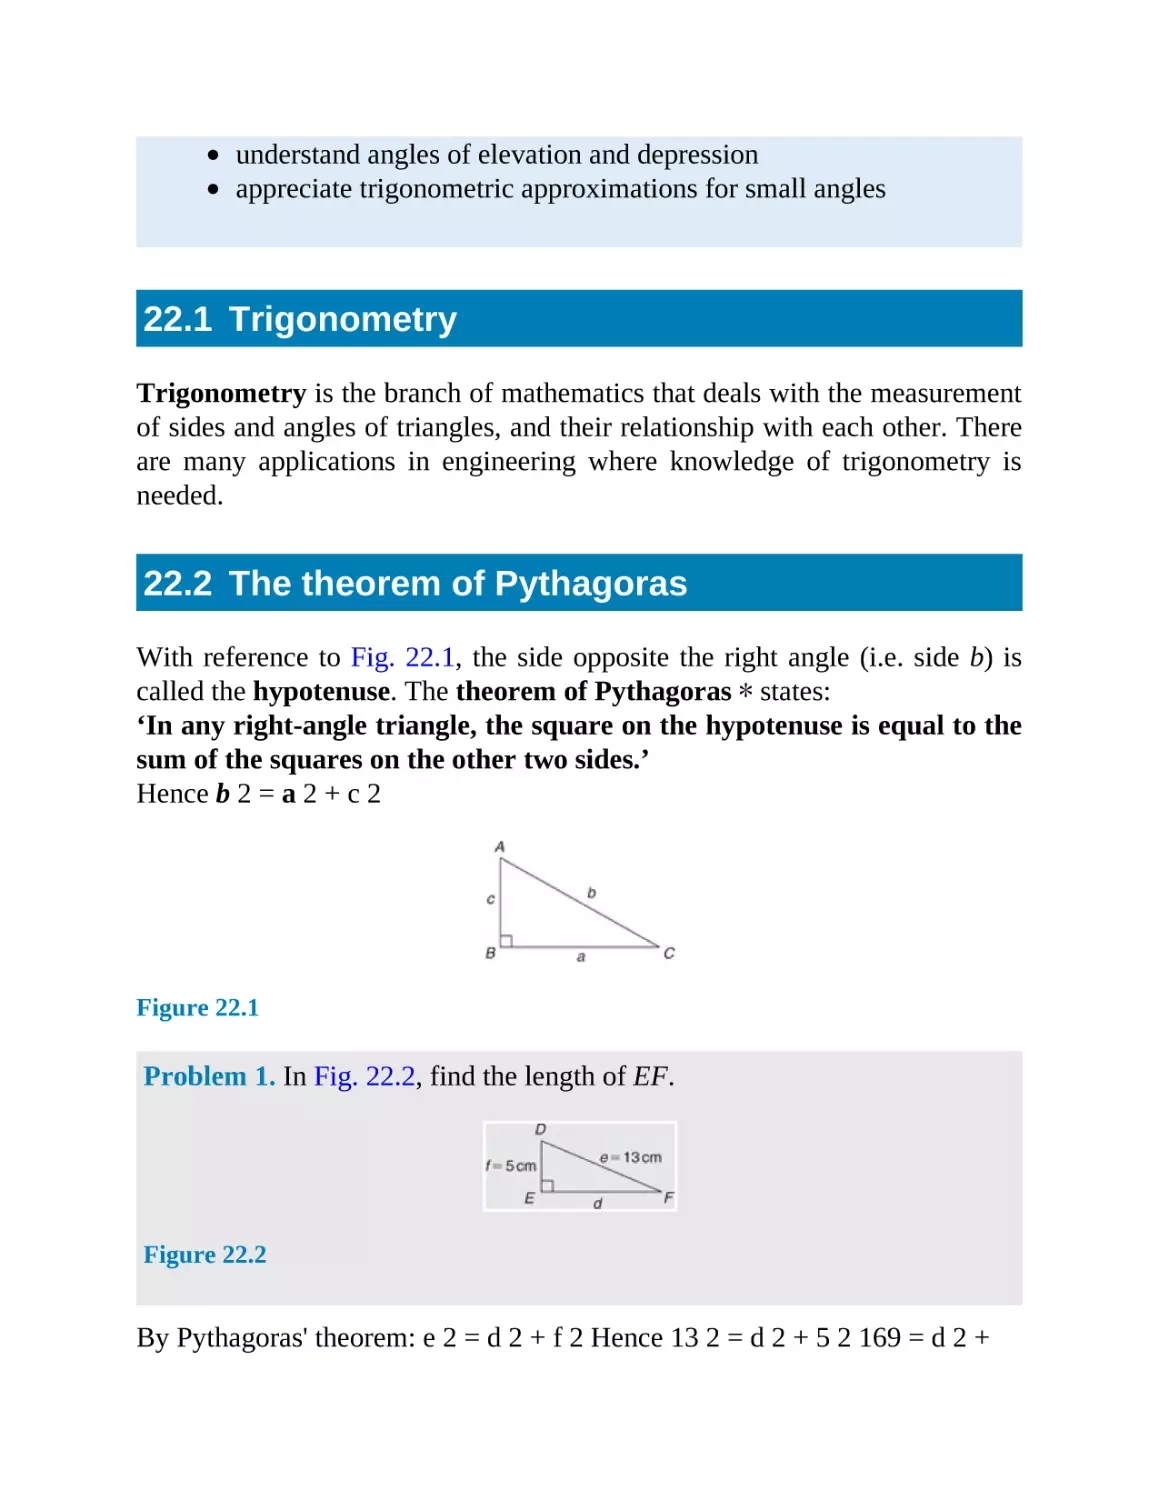 22.1 Trigonometry
22.2 The theorem of Pythagoras